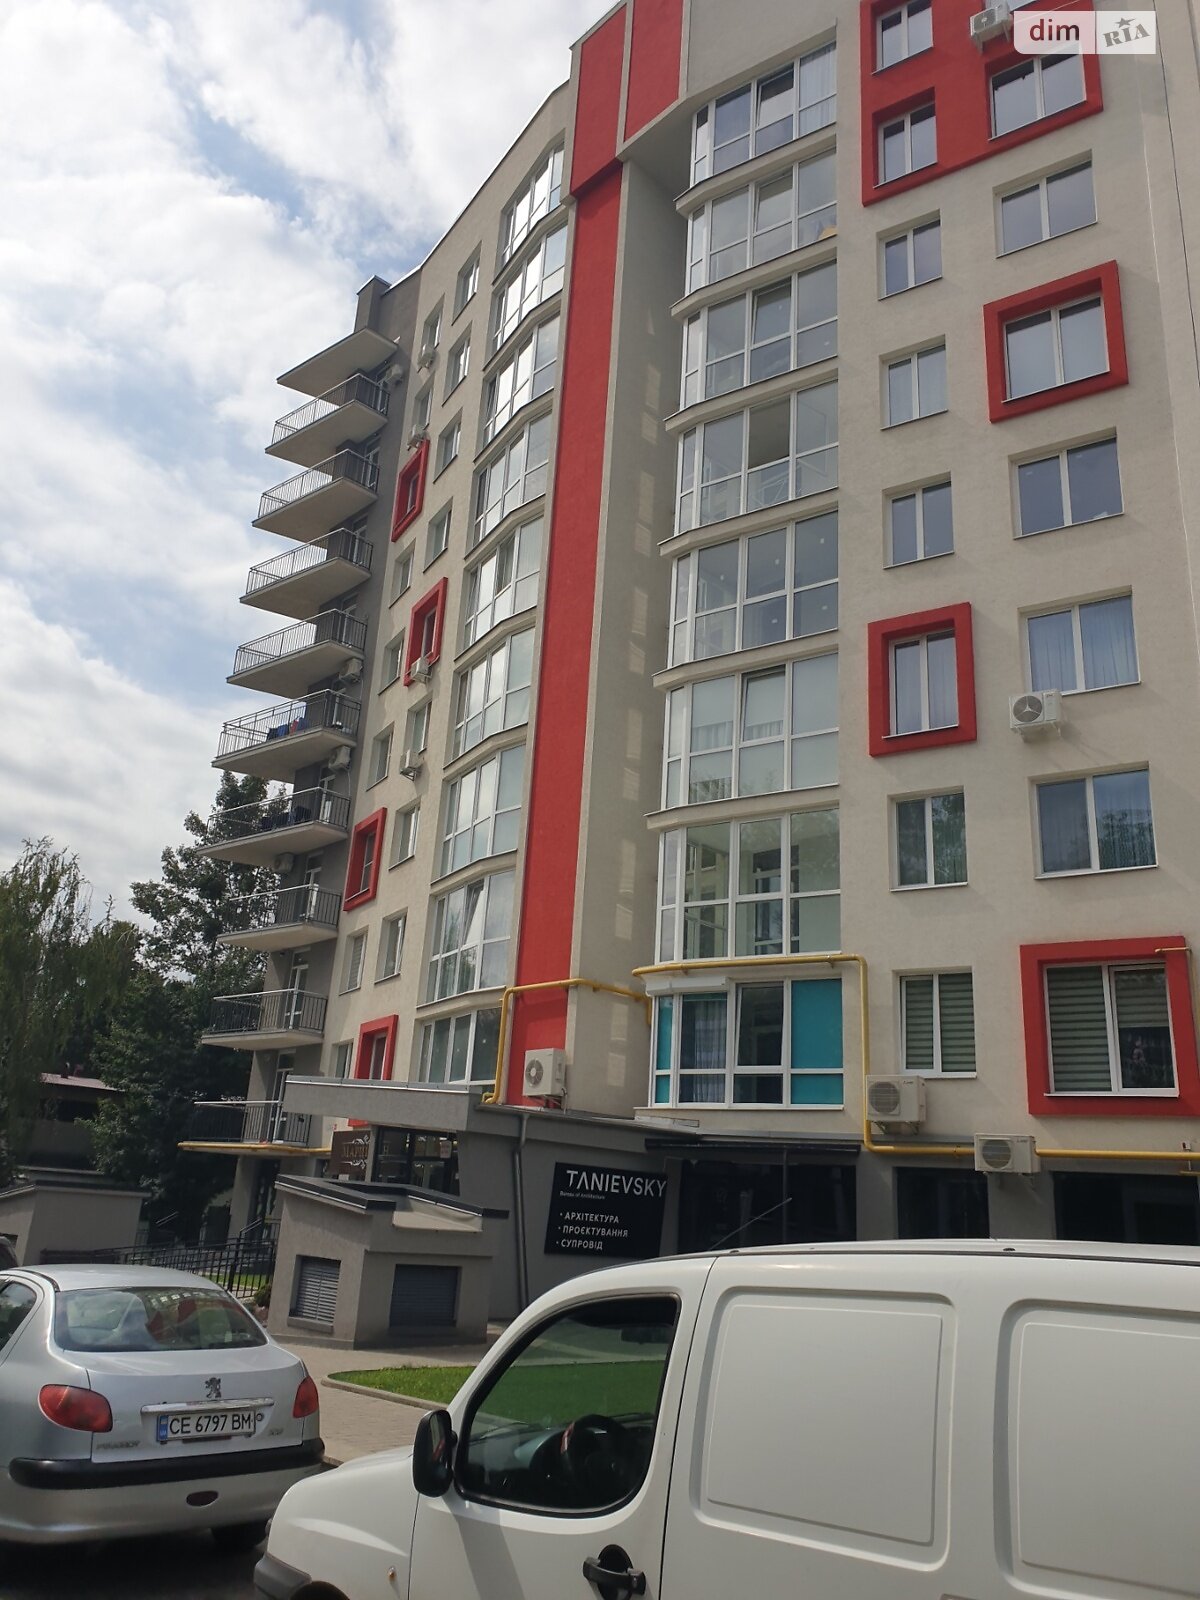 Продажа трехкомнатной квартиры в Черновцах, на ул. Независимости 125А, район Проспект фото 1